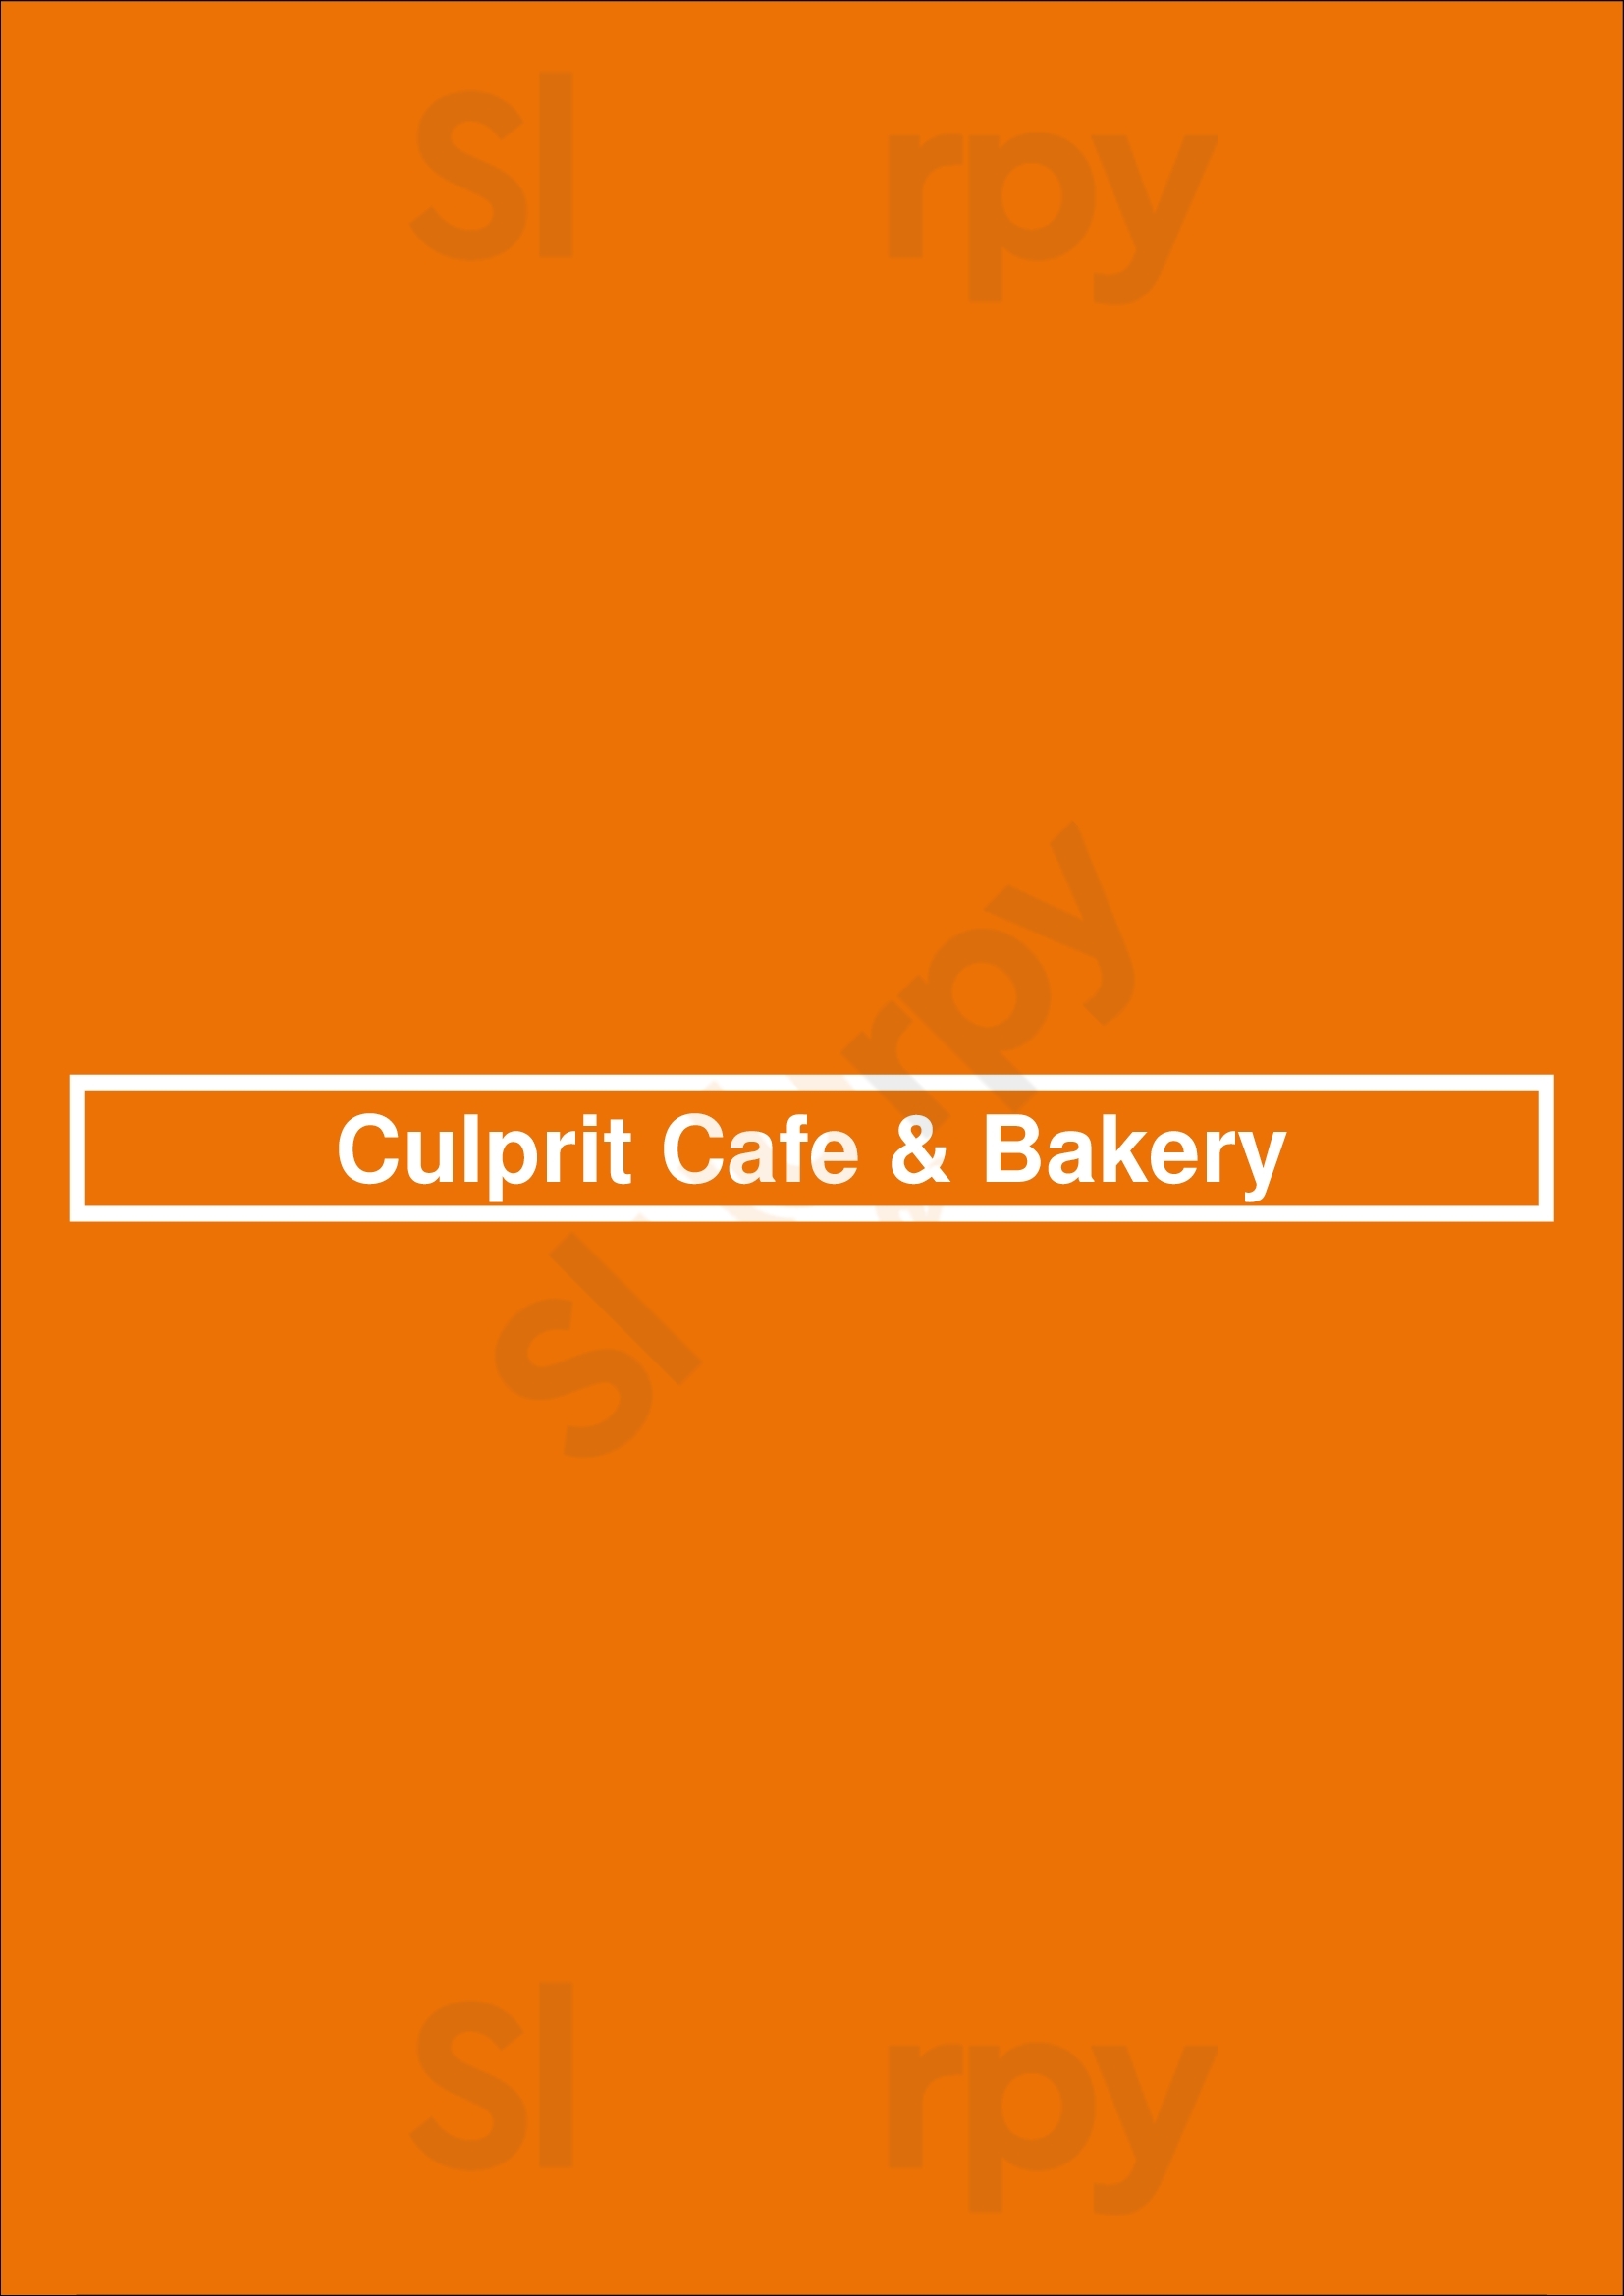 Culprit Cafe & Bakery Omaha Menu - 1